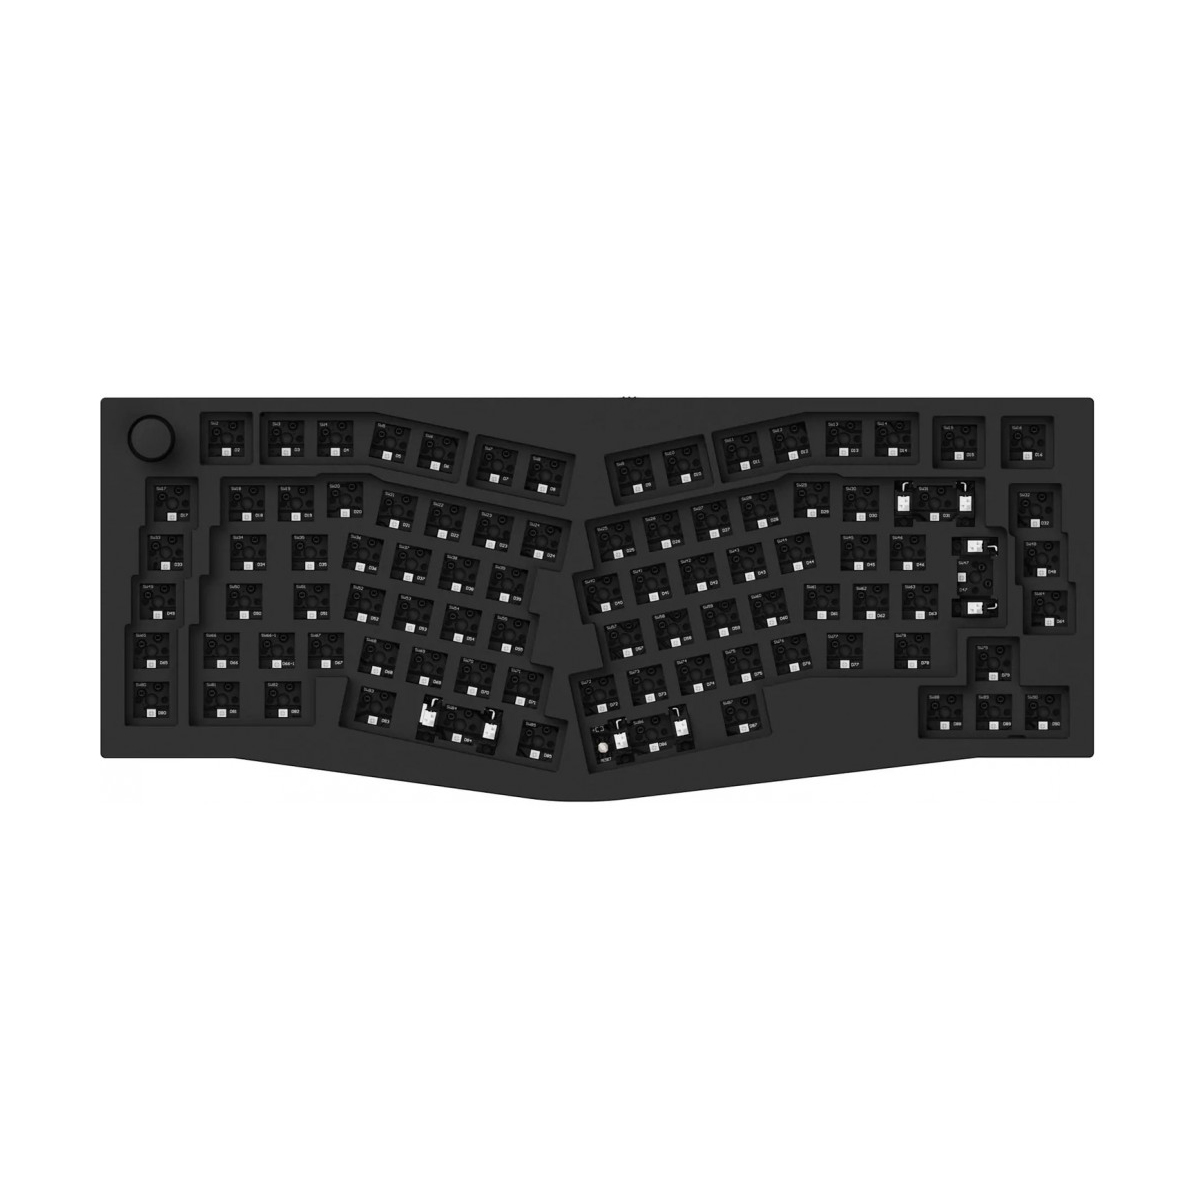 Keychron Q10-F1 Desktop Keyboard